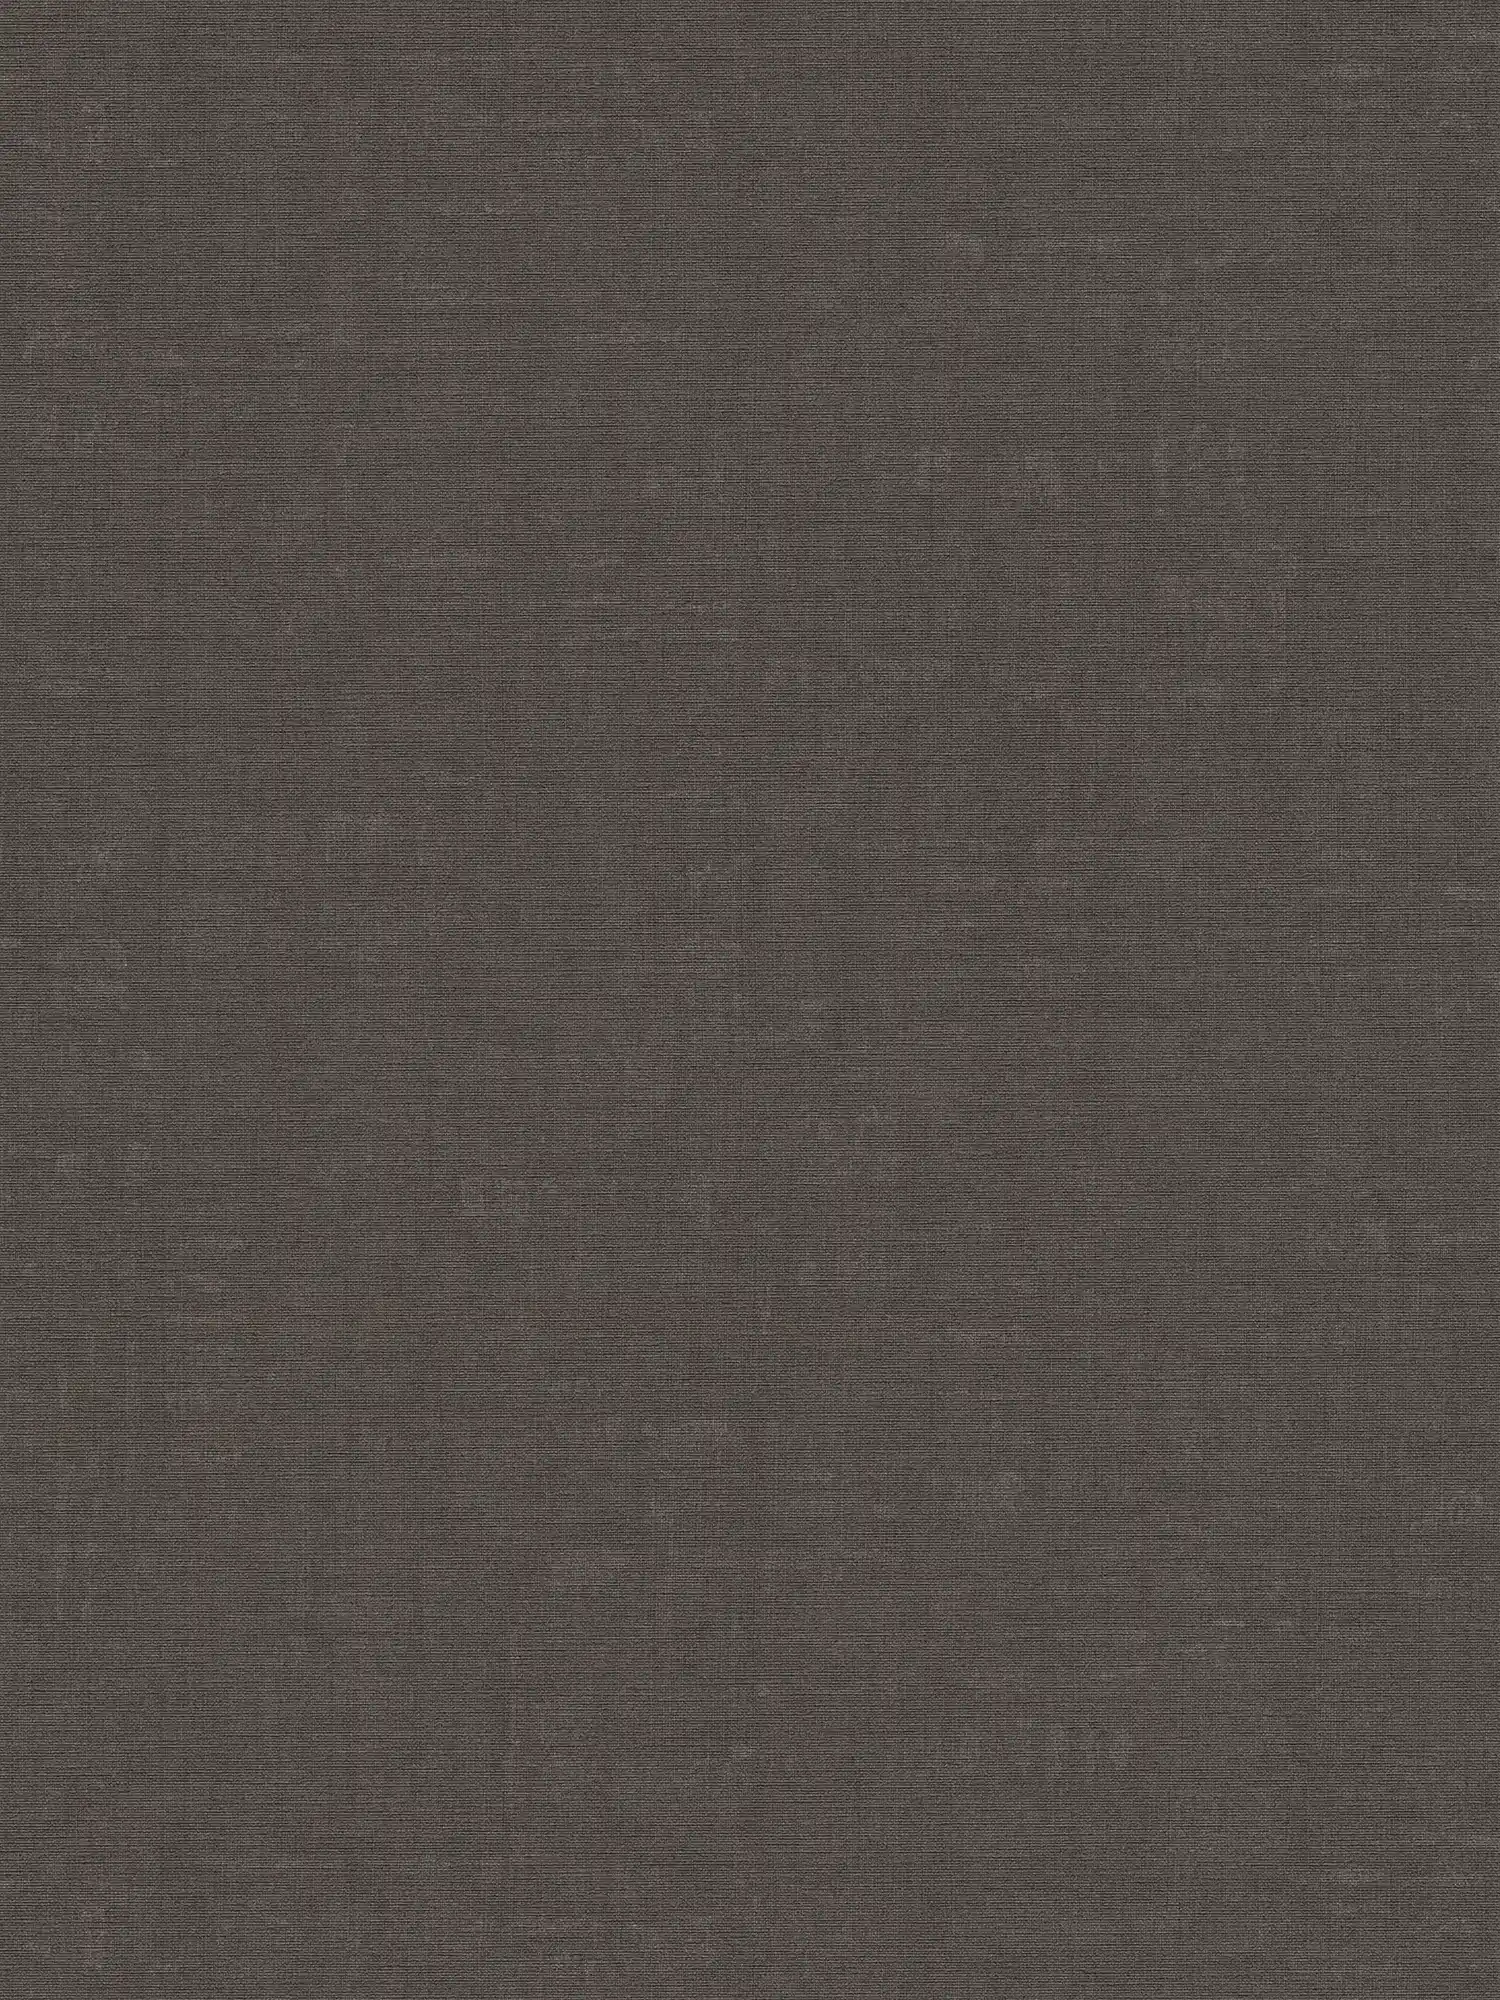 Melierte Tapete unifarben mit Strukturdesign – Grau, Schwarz
